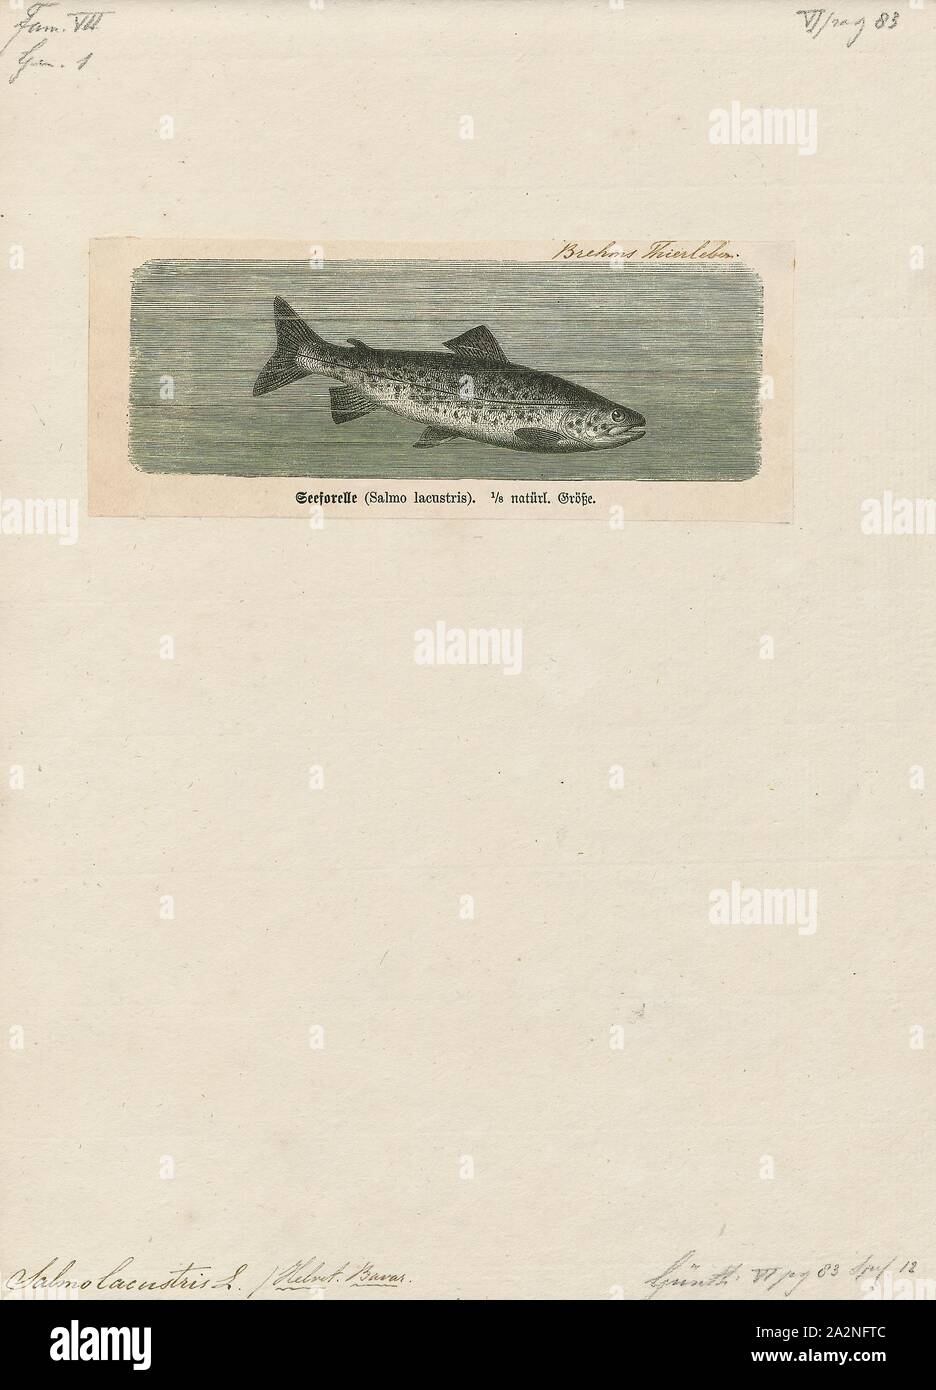 Salmo lacustris, Imprimer, Salmo est un genre de poissons de la famille des Salmonidés saumon ce qui inclut l'espèce de saumon et de truite, parmi eux le connaissent bien le Saumon atlantique Salmo salar et la truite brune (Salmo trutta. La répartition naturelle de Salmo s'étend aussi à l'Afrique du Nord et de l'Asie de l'Ouest autour du bassin de la mer Noire. La seule espèce Salmo présents naturellement dans l'Amérique du Nord de l'Atlantique est le saumon de l'Atlantique, alors que les saumons et truites du bassin du Pacifique appartiennent à un autre genre Oncorhynchus. Le nom générique Salmo dérive du latin salmō (saumon). Le nombre de Banque D'Images